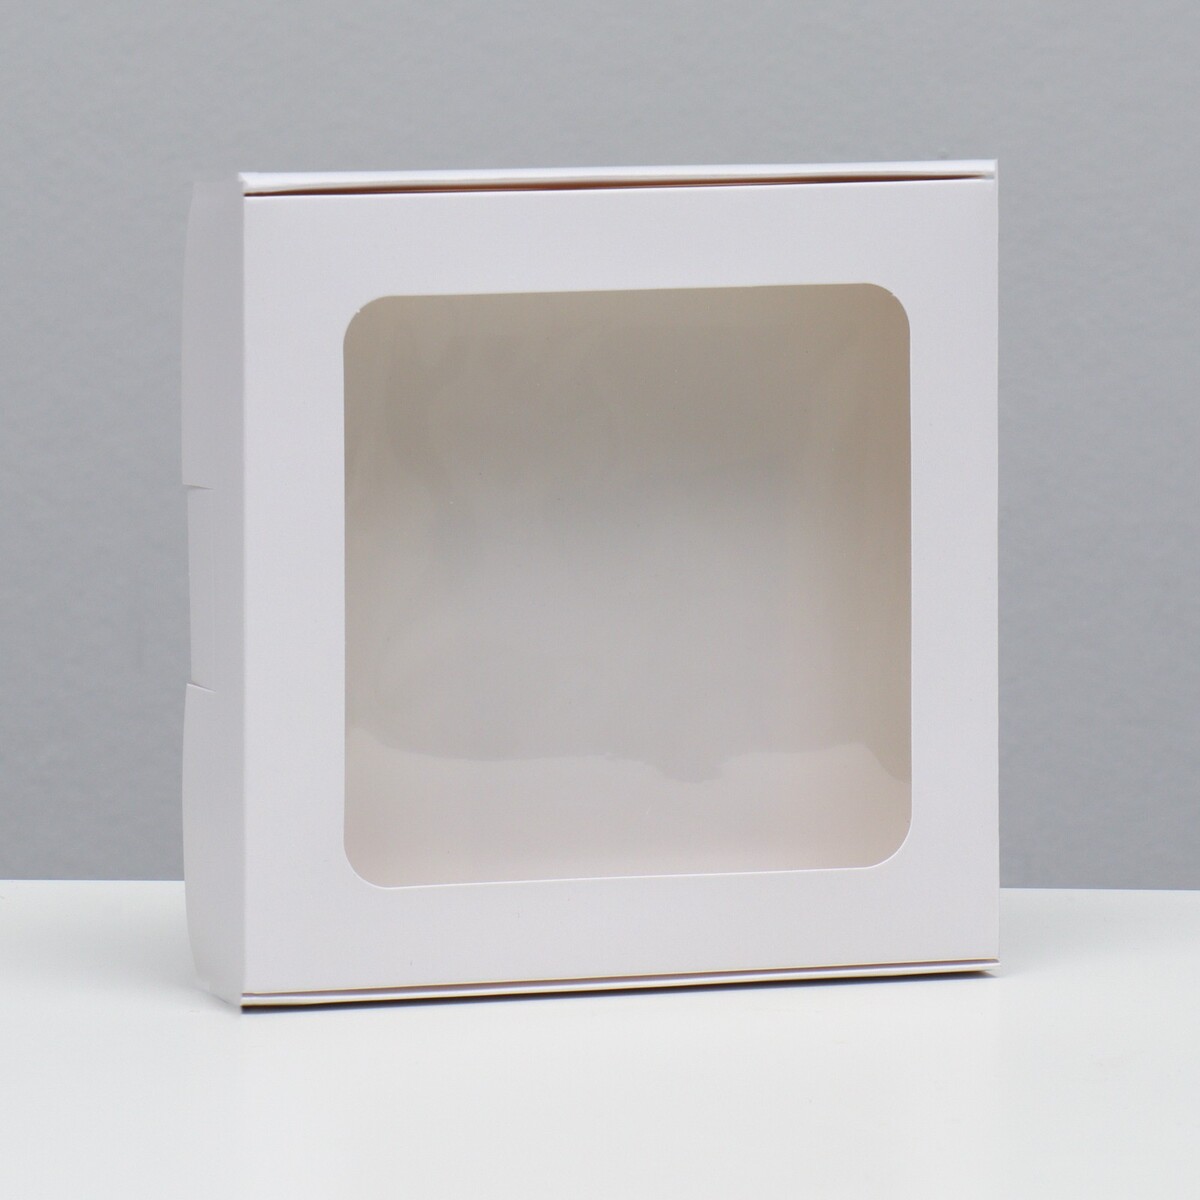 Коробка самосборная, белая, 16 х 16 х 3 см коробка самосборная белая 19 х 19 х 3 см